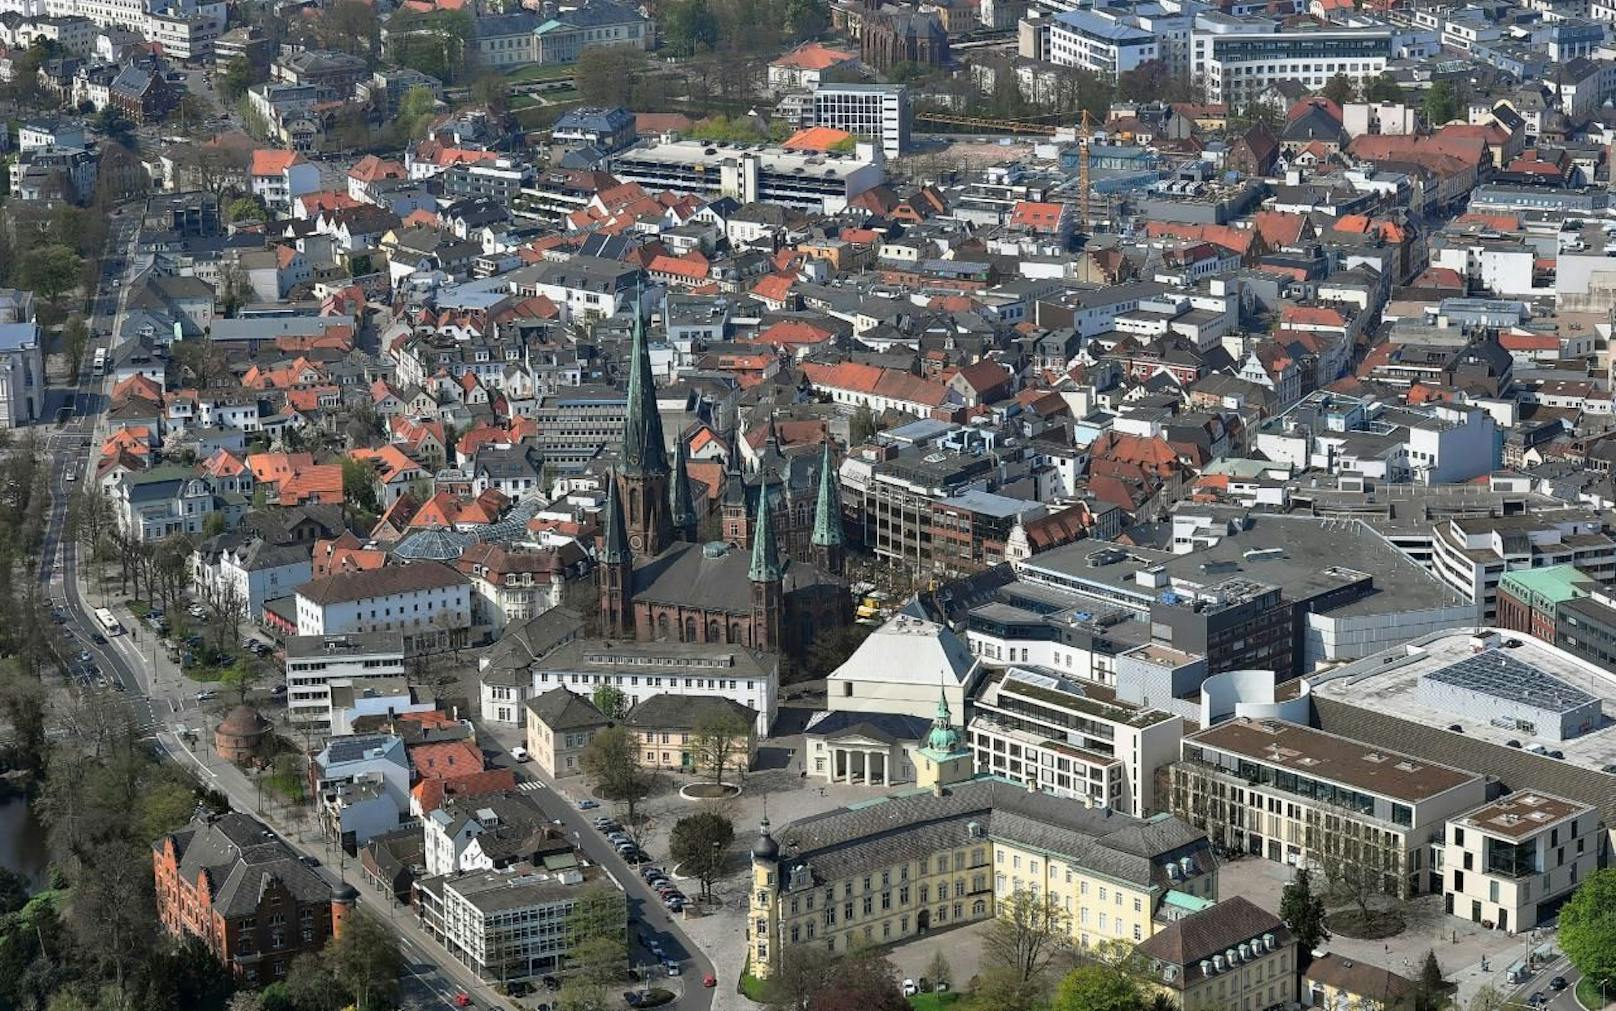 Die Innenstadt von Oldenburg aus der Luft gesehen. Blickrichtung Norden